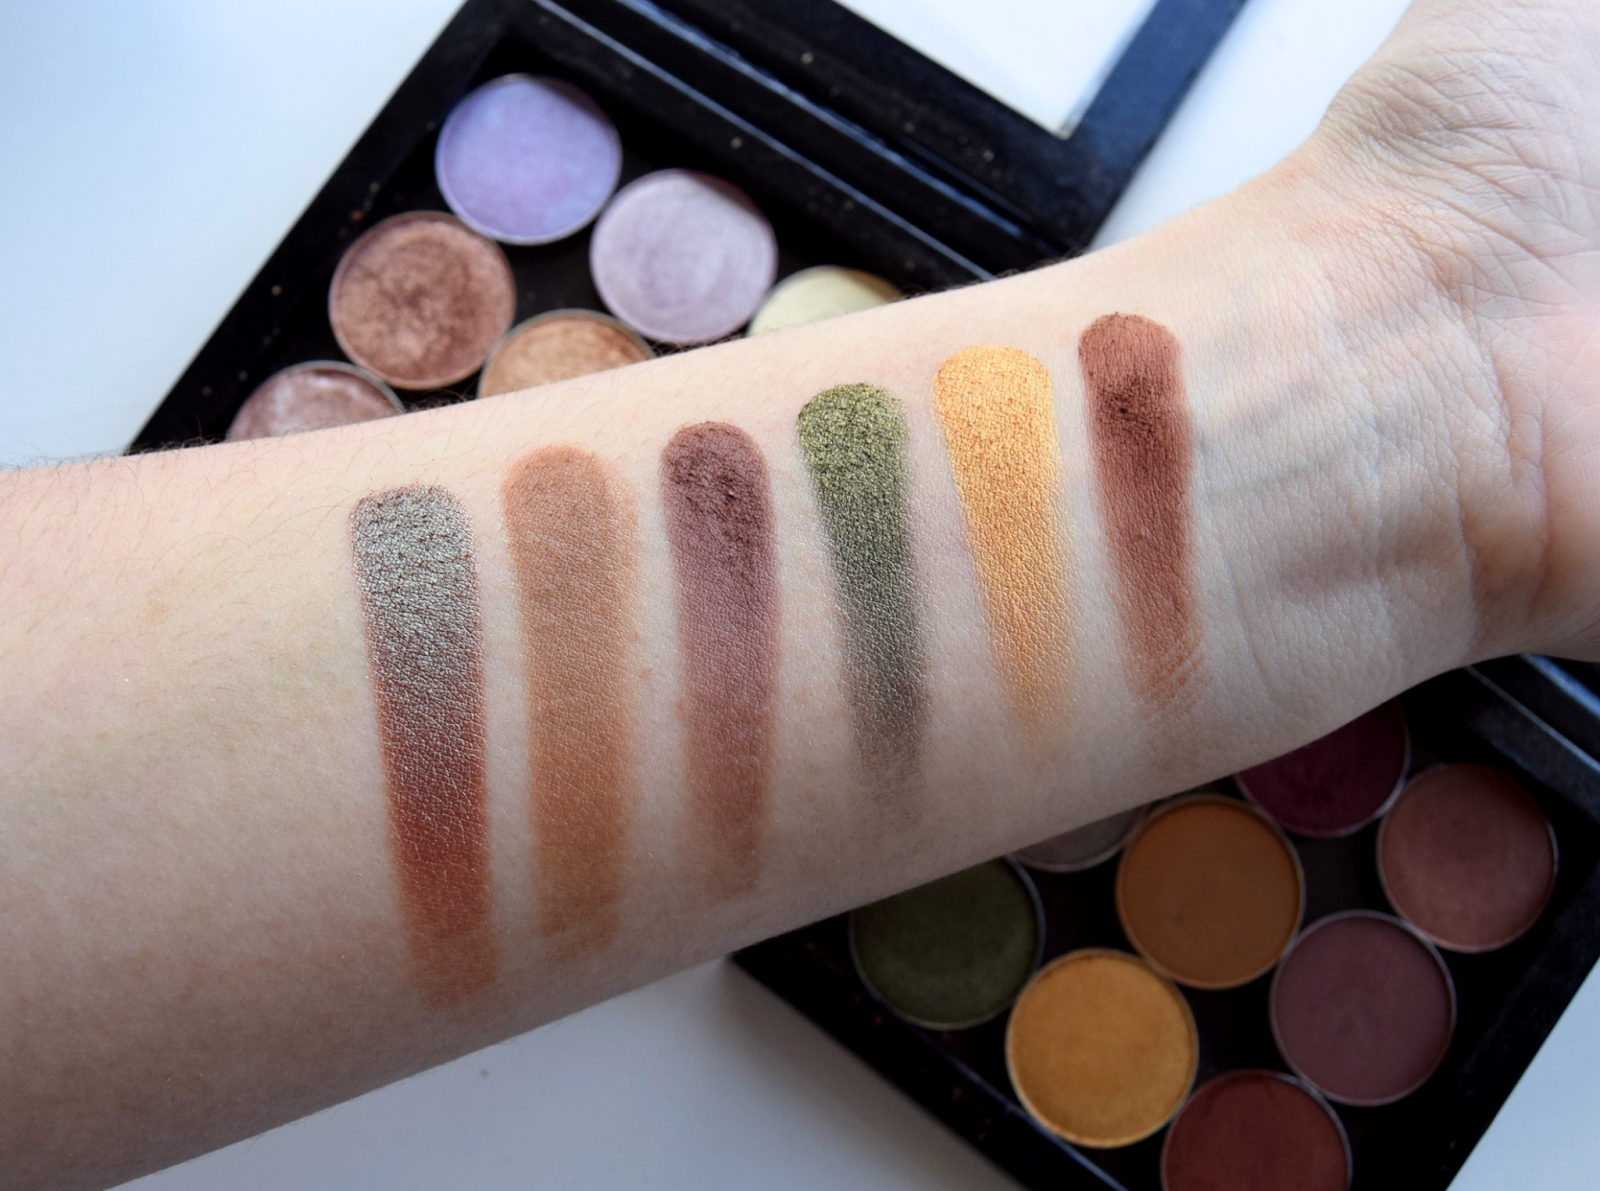 Makeup geek power pigments vs viseart editorial brights palette